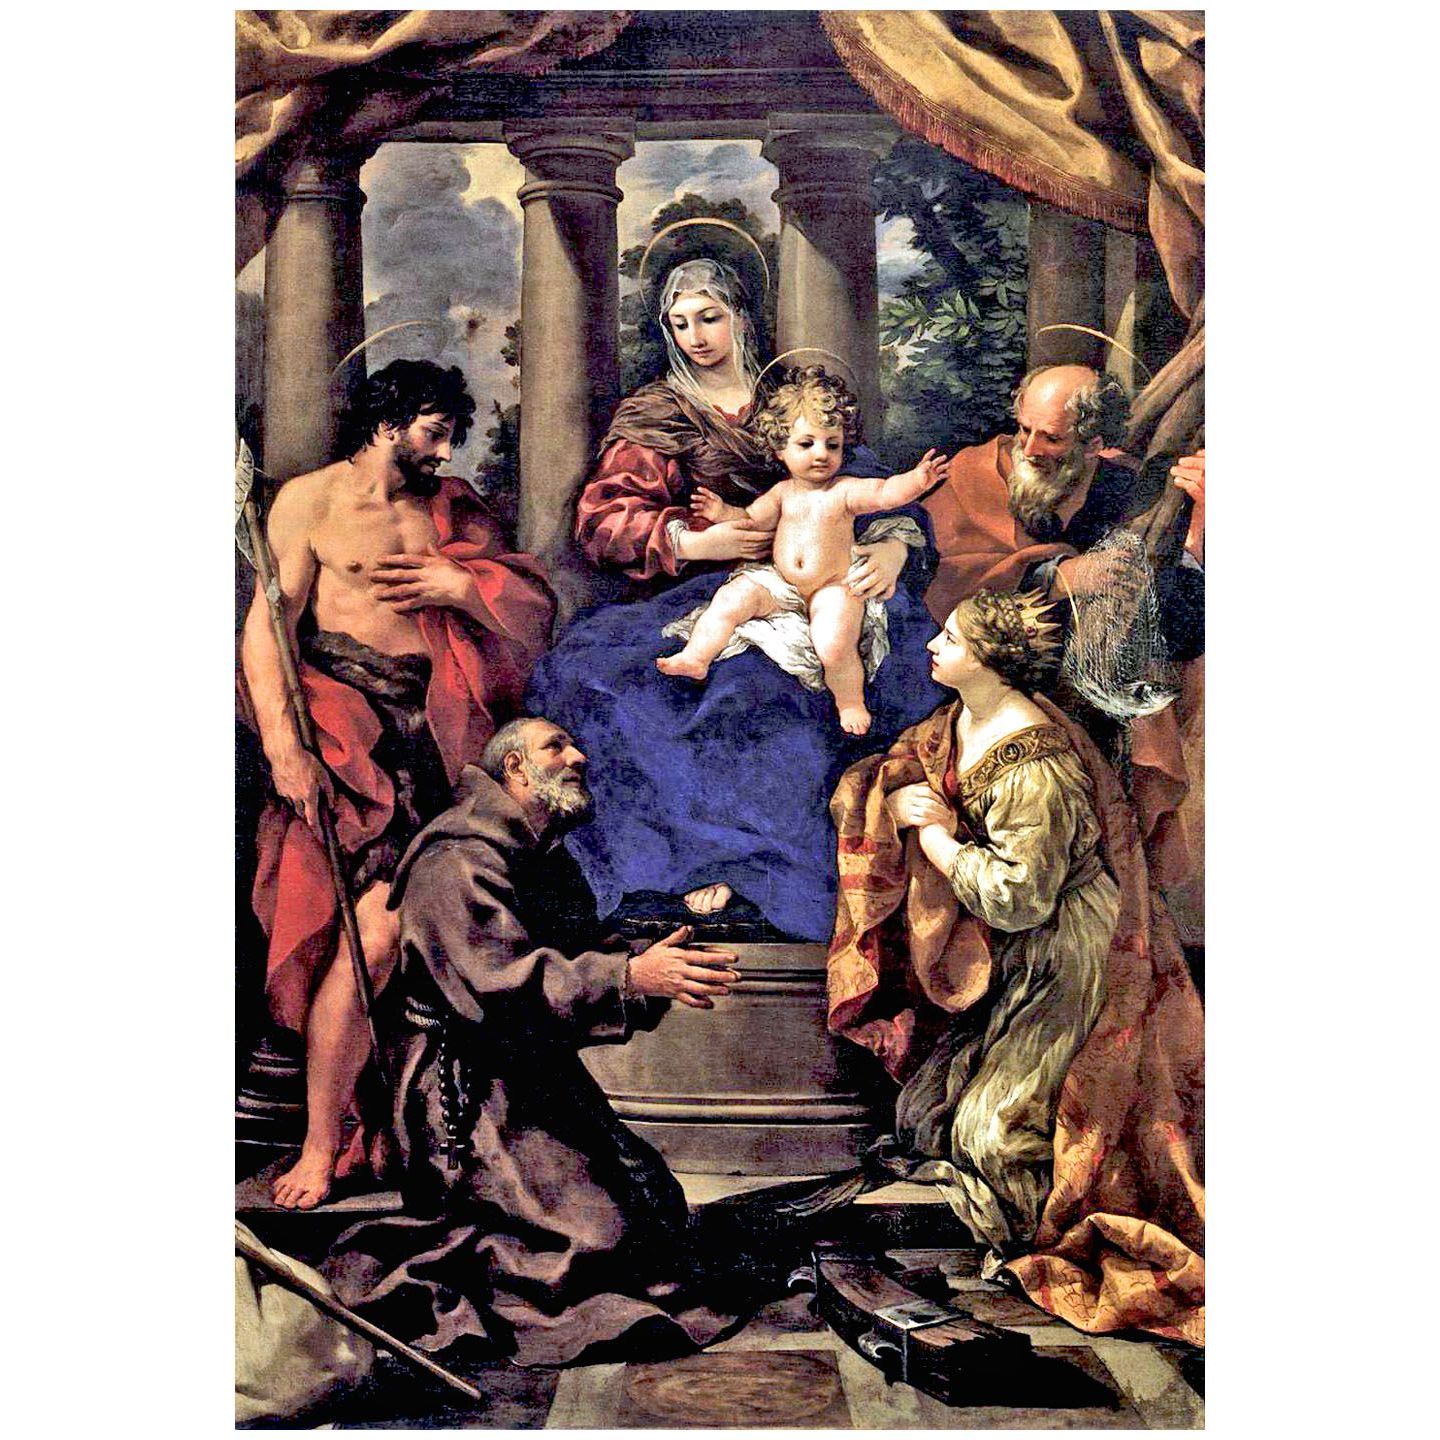 Pietro da Cortona. Vergine e Bambino con Santi. 1620-1625. Brera, Milano